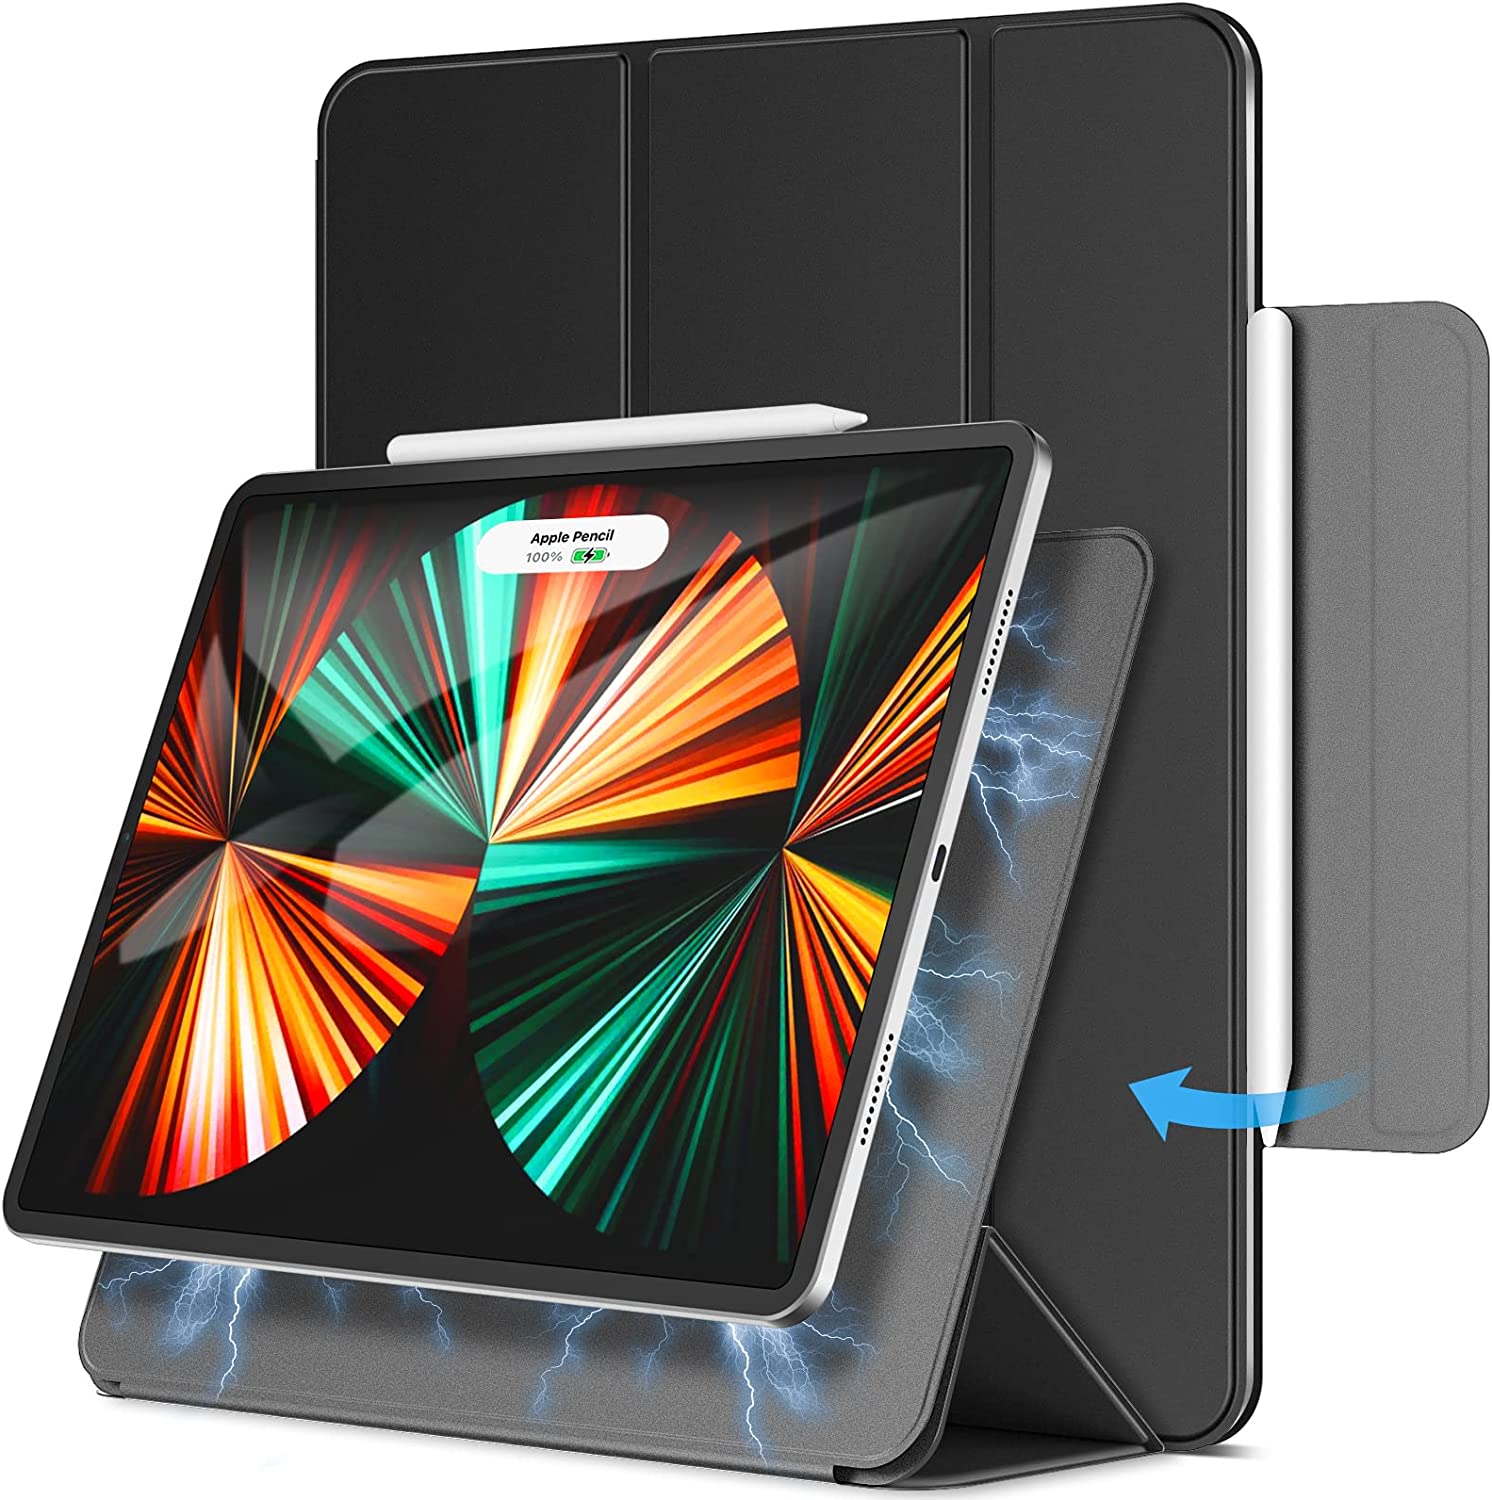 Coque Magnétique JETech pour iPad Pro 12,9 Pouces 2021, 2020, 2018 (5ème, 4ème, 3ème Génération), la Charge de Pencil 2e Génération, Housse Étui Réveil et Veille Automatique (Noir)